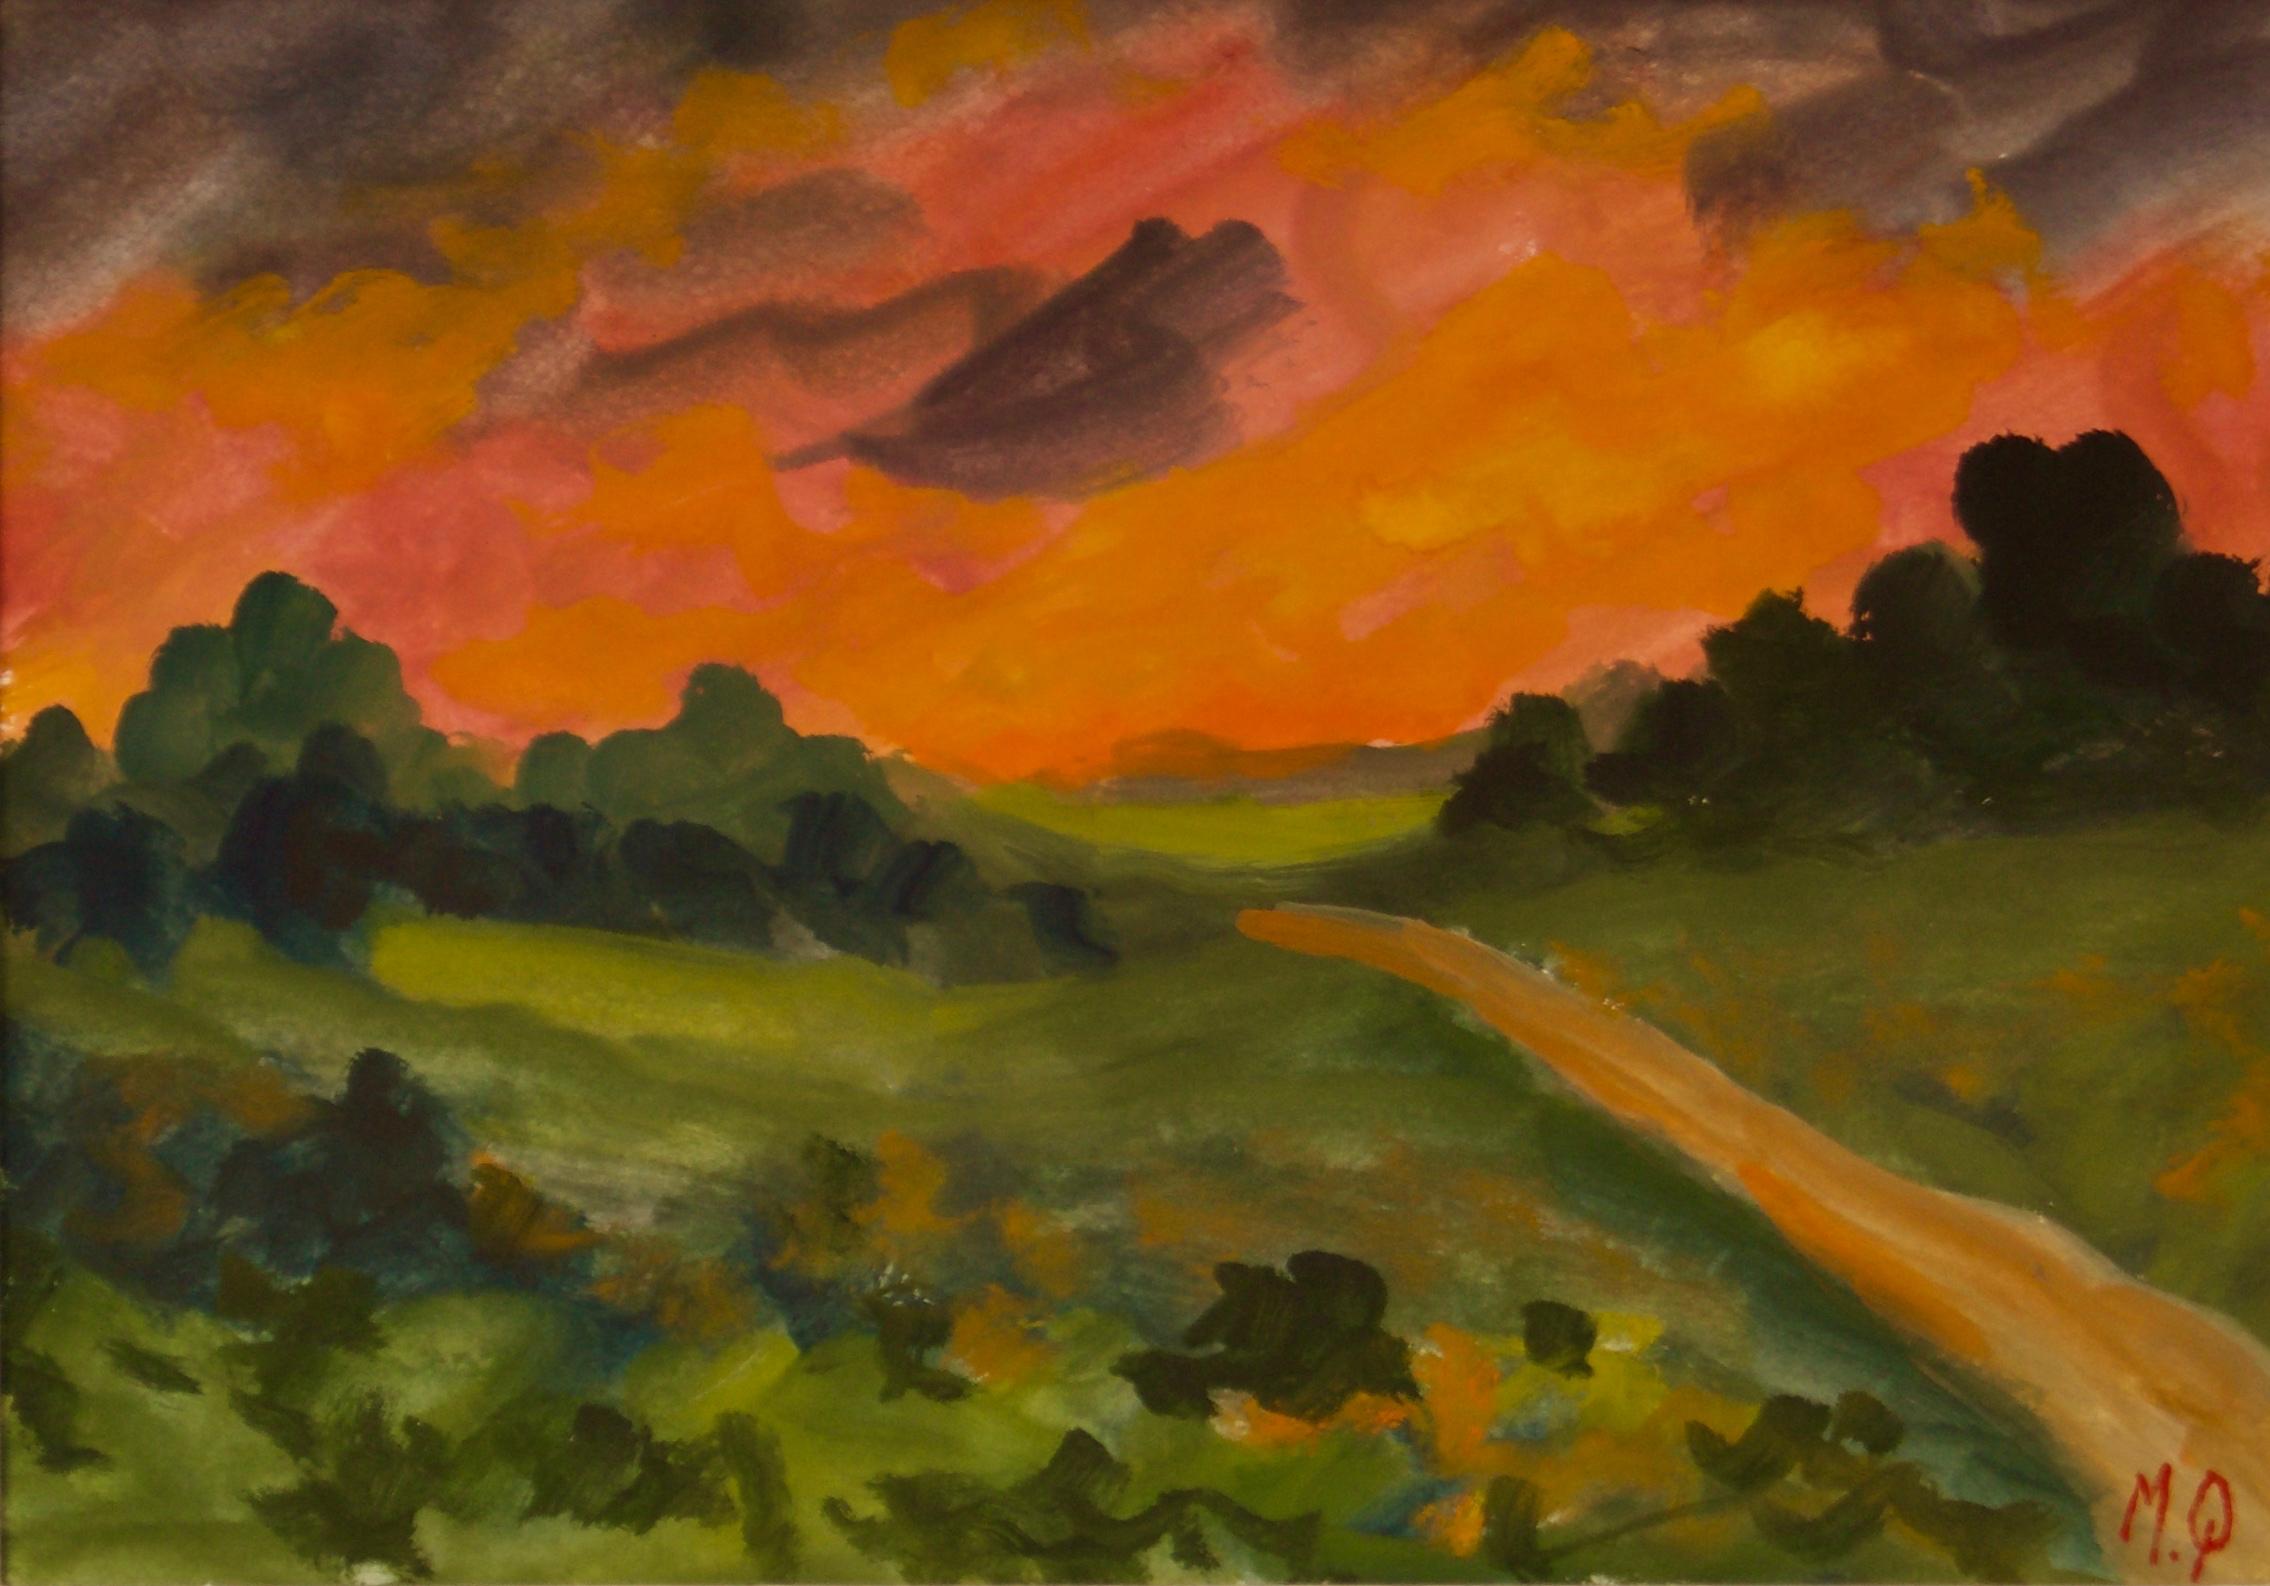 Sunset in the Country - Impressionistisches Stück von Michael Quirke aus dem frühen 20. Jahrhundert